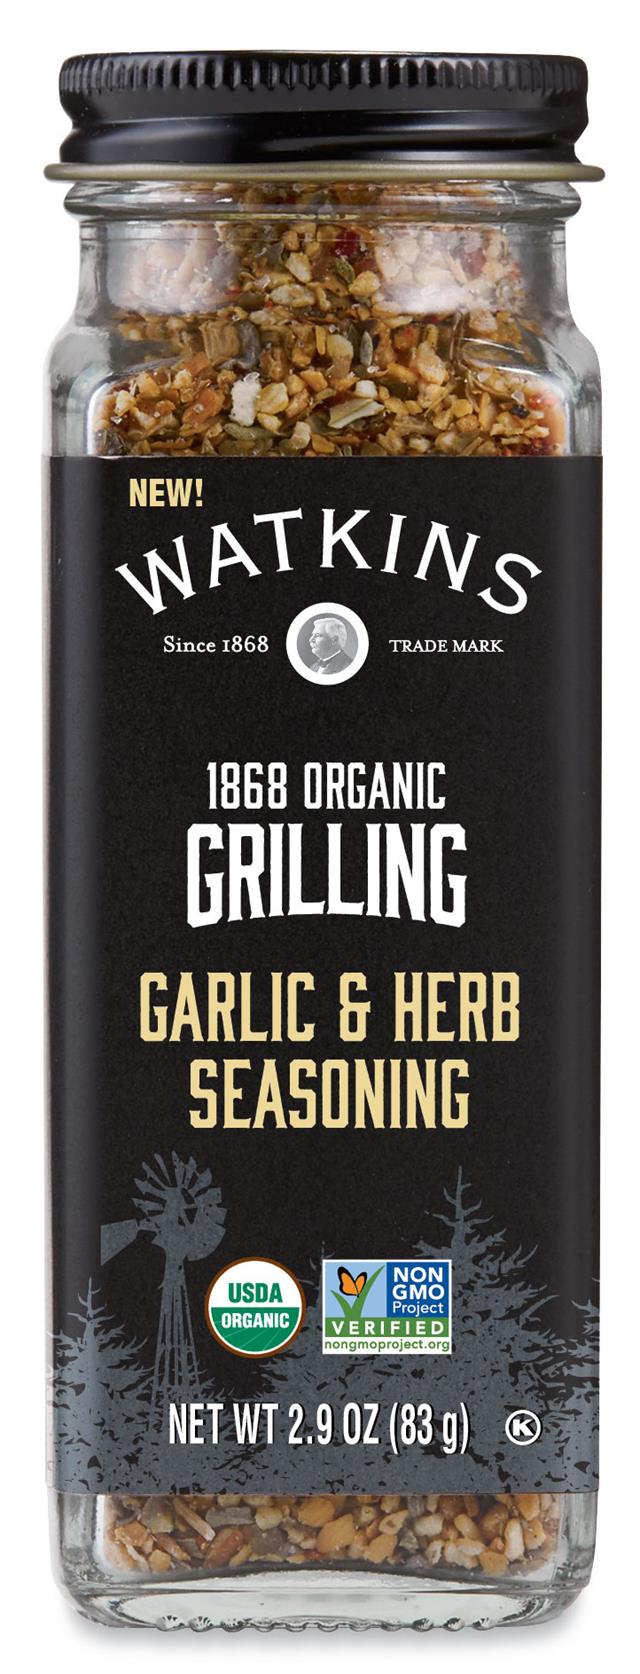 Garlic & Herb Seasoning